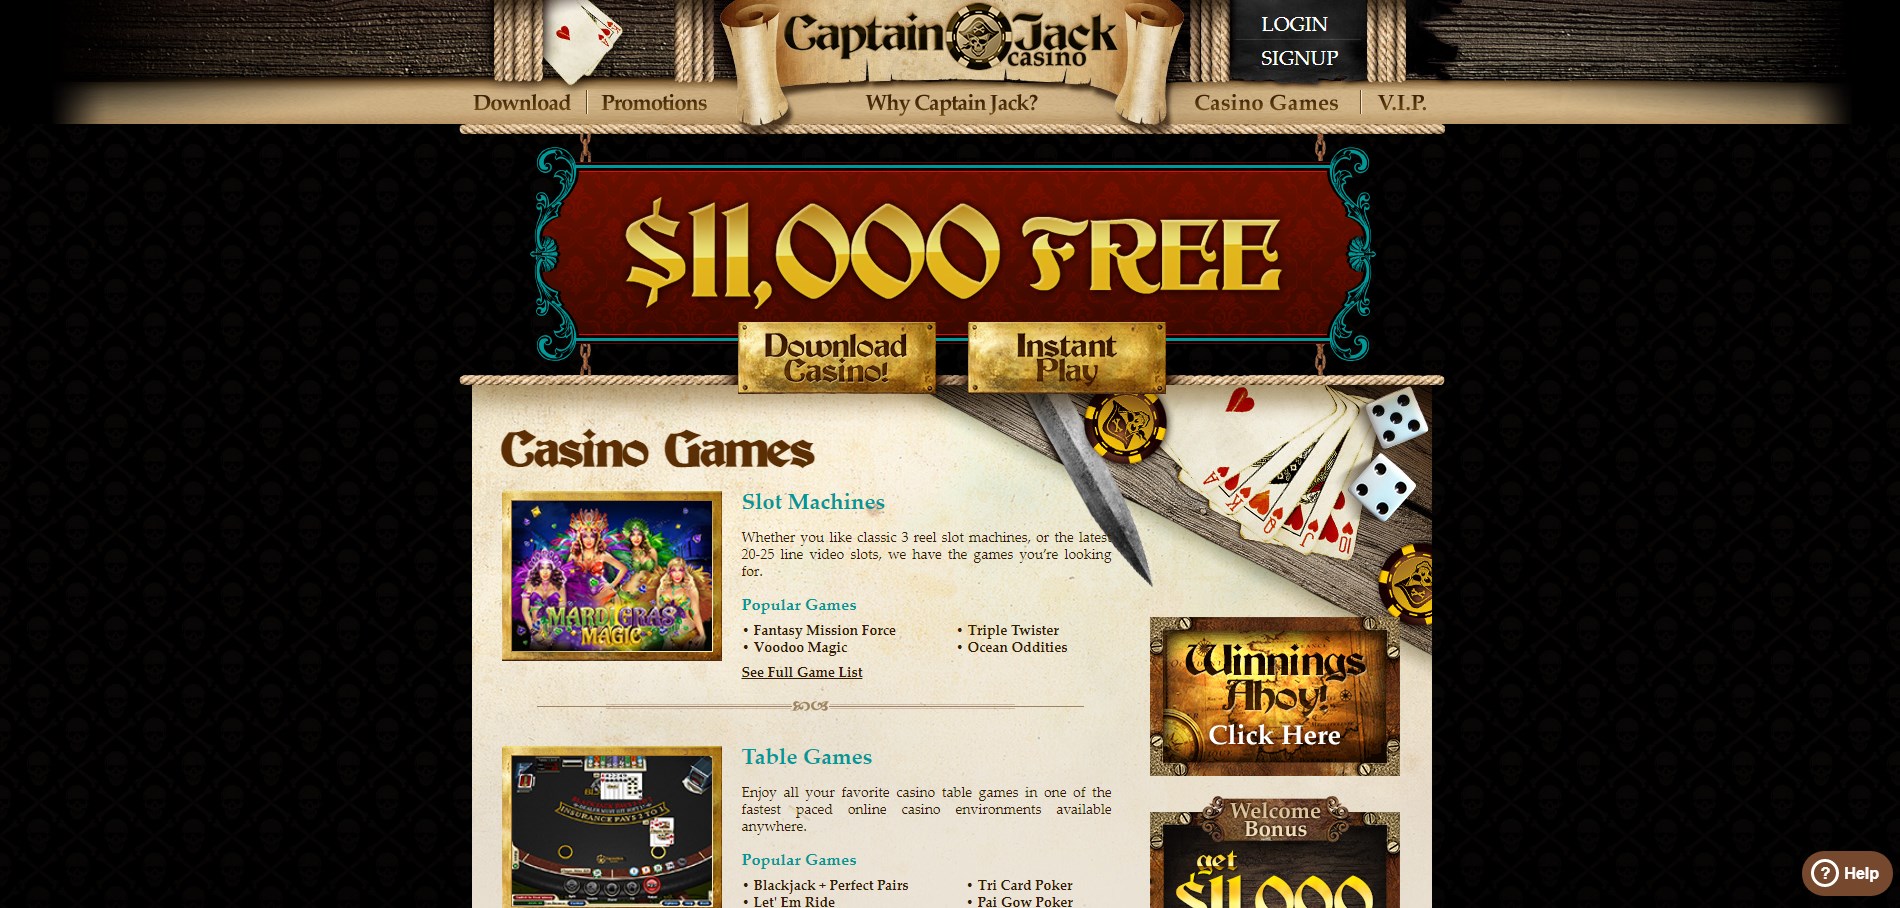 Captain Jack Casino Games